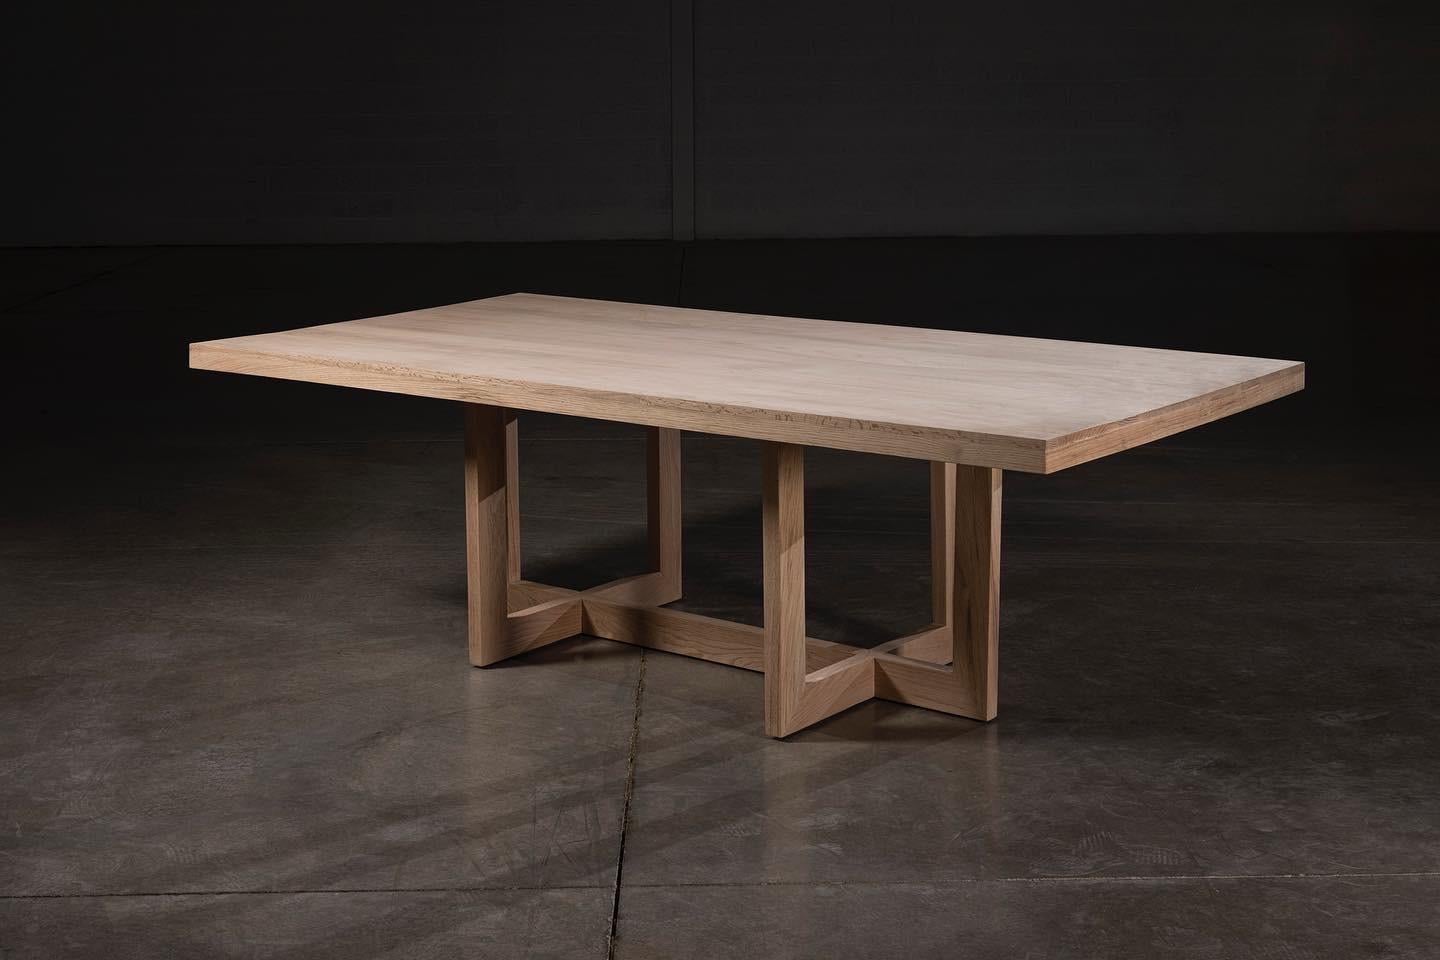 Cette table est fabriquée en chêne massif naturel, 100 % à la main par des artisans mexicains expérimentés. 
Le ton organique du chêne est conservé grâce à un beau plateau solide et à une base au design arachnéen.